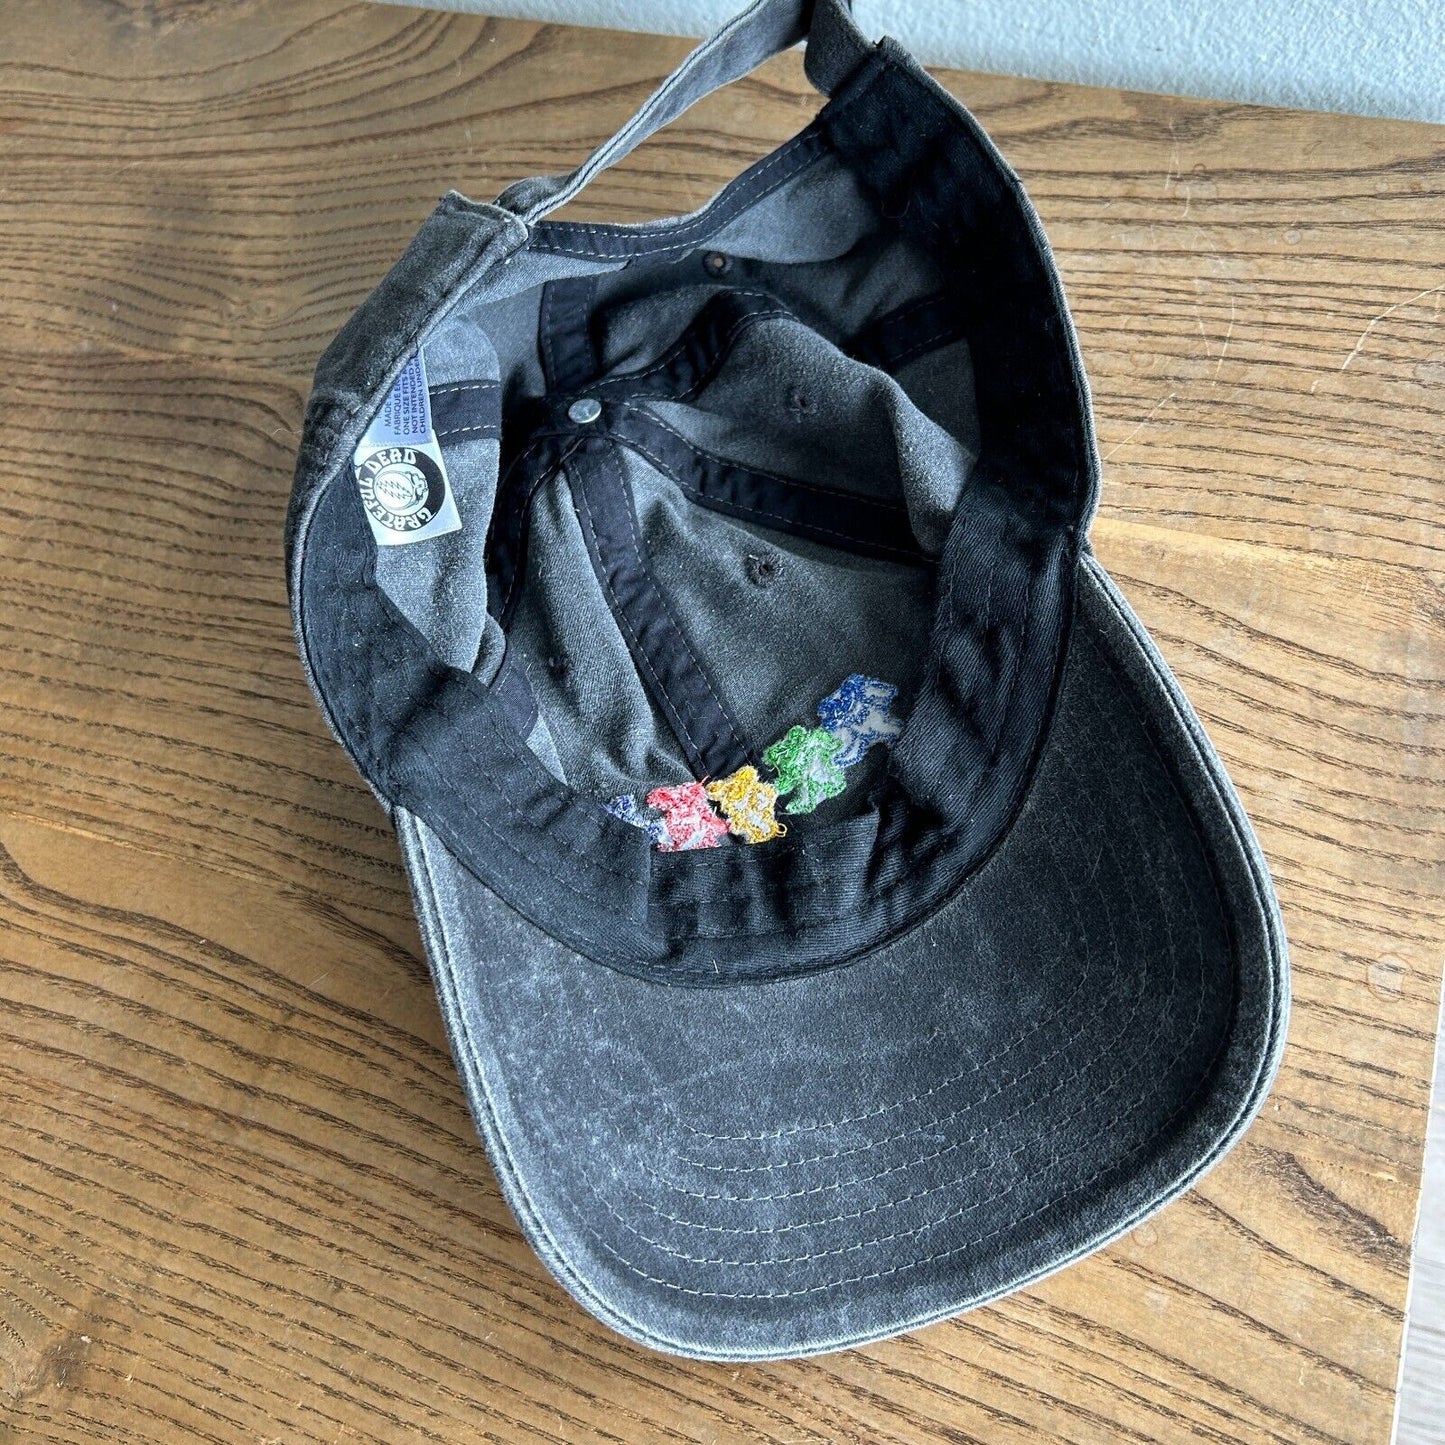 VINTAGE | Grateful Dead Faded Black Strap Back Cap HAT One Size